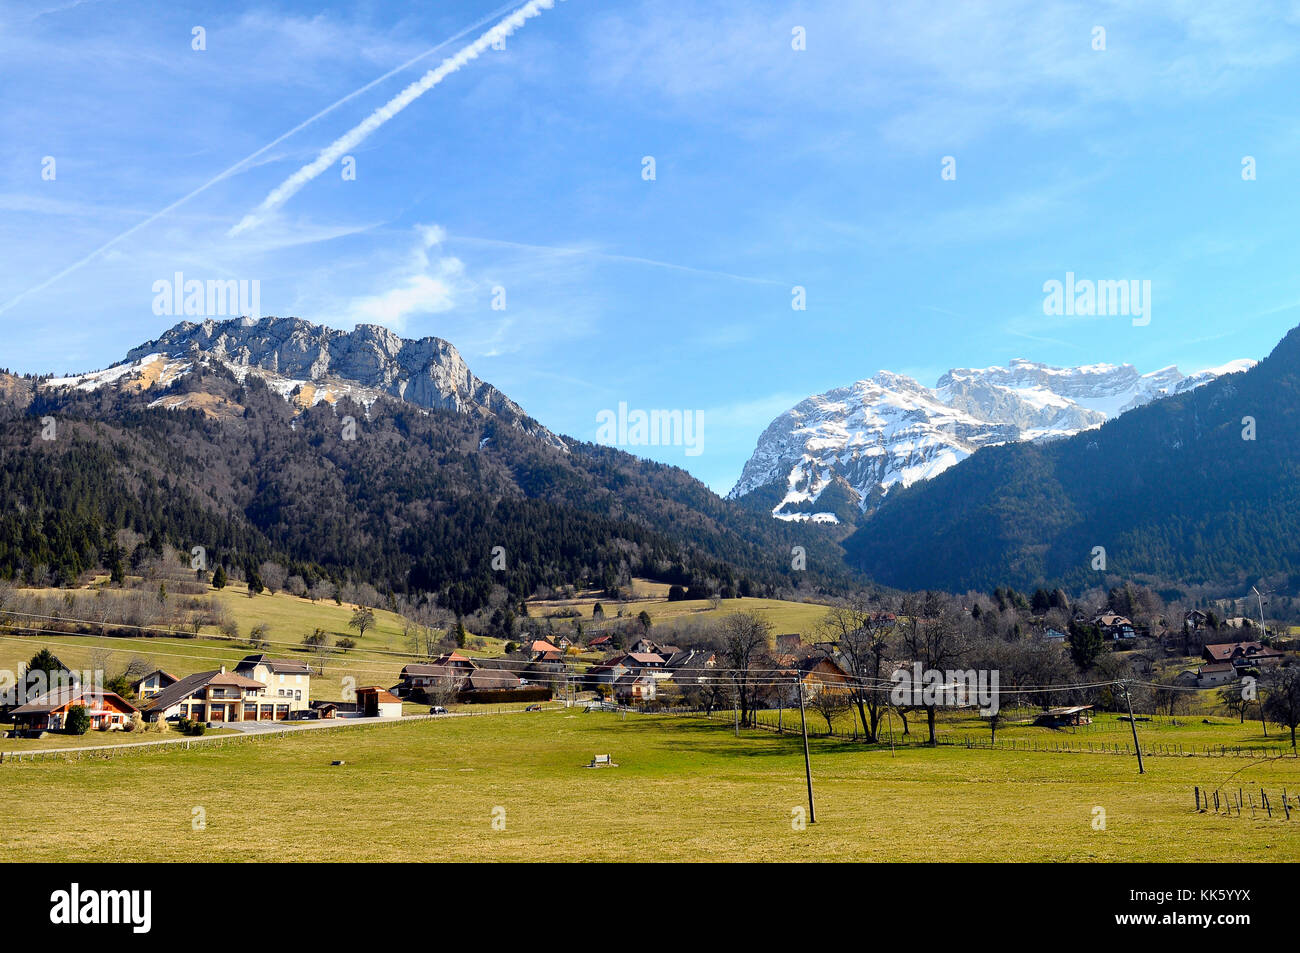 Sommet de la tournette neigé et village, paysage en Savoie près d'Annecy, France Banque D'Images